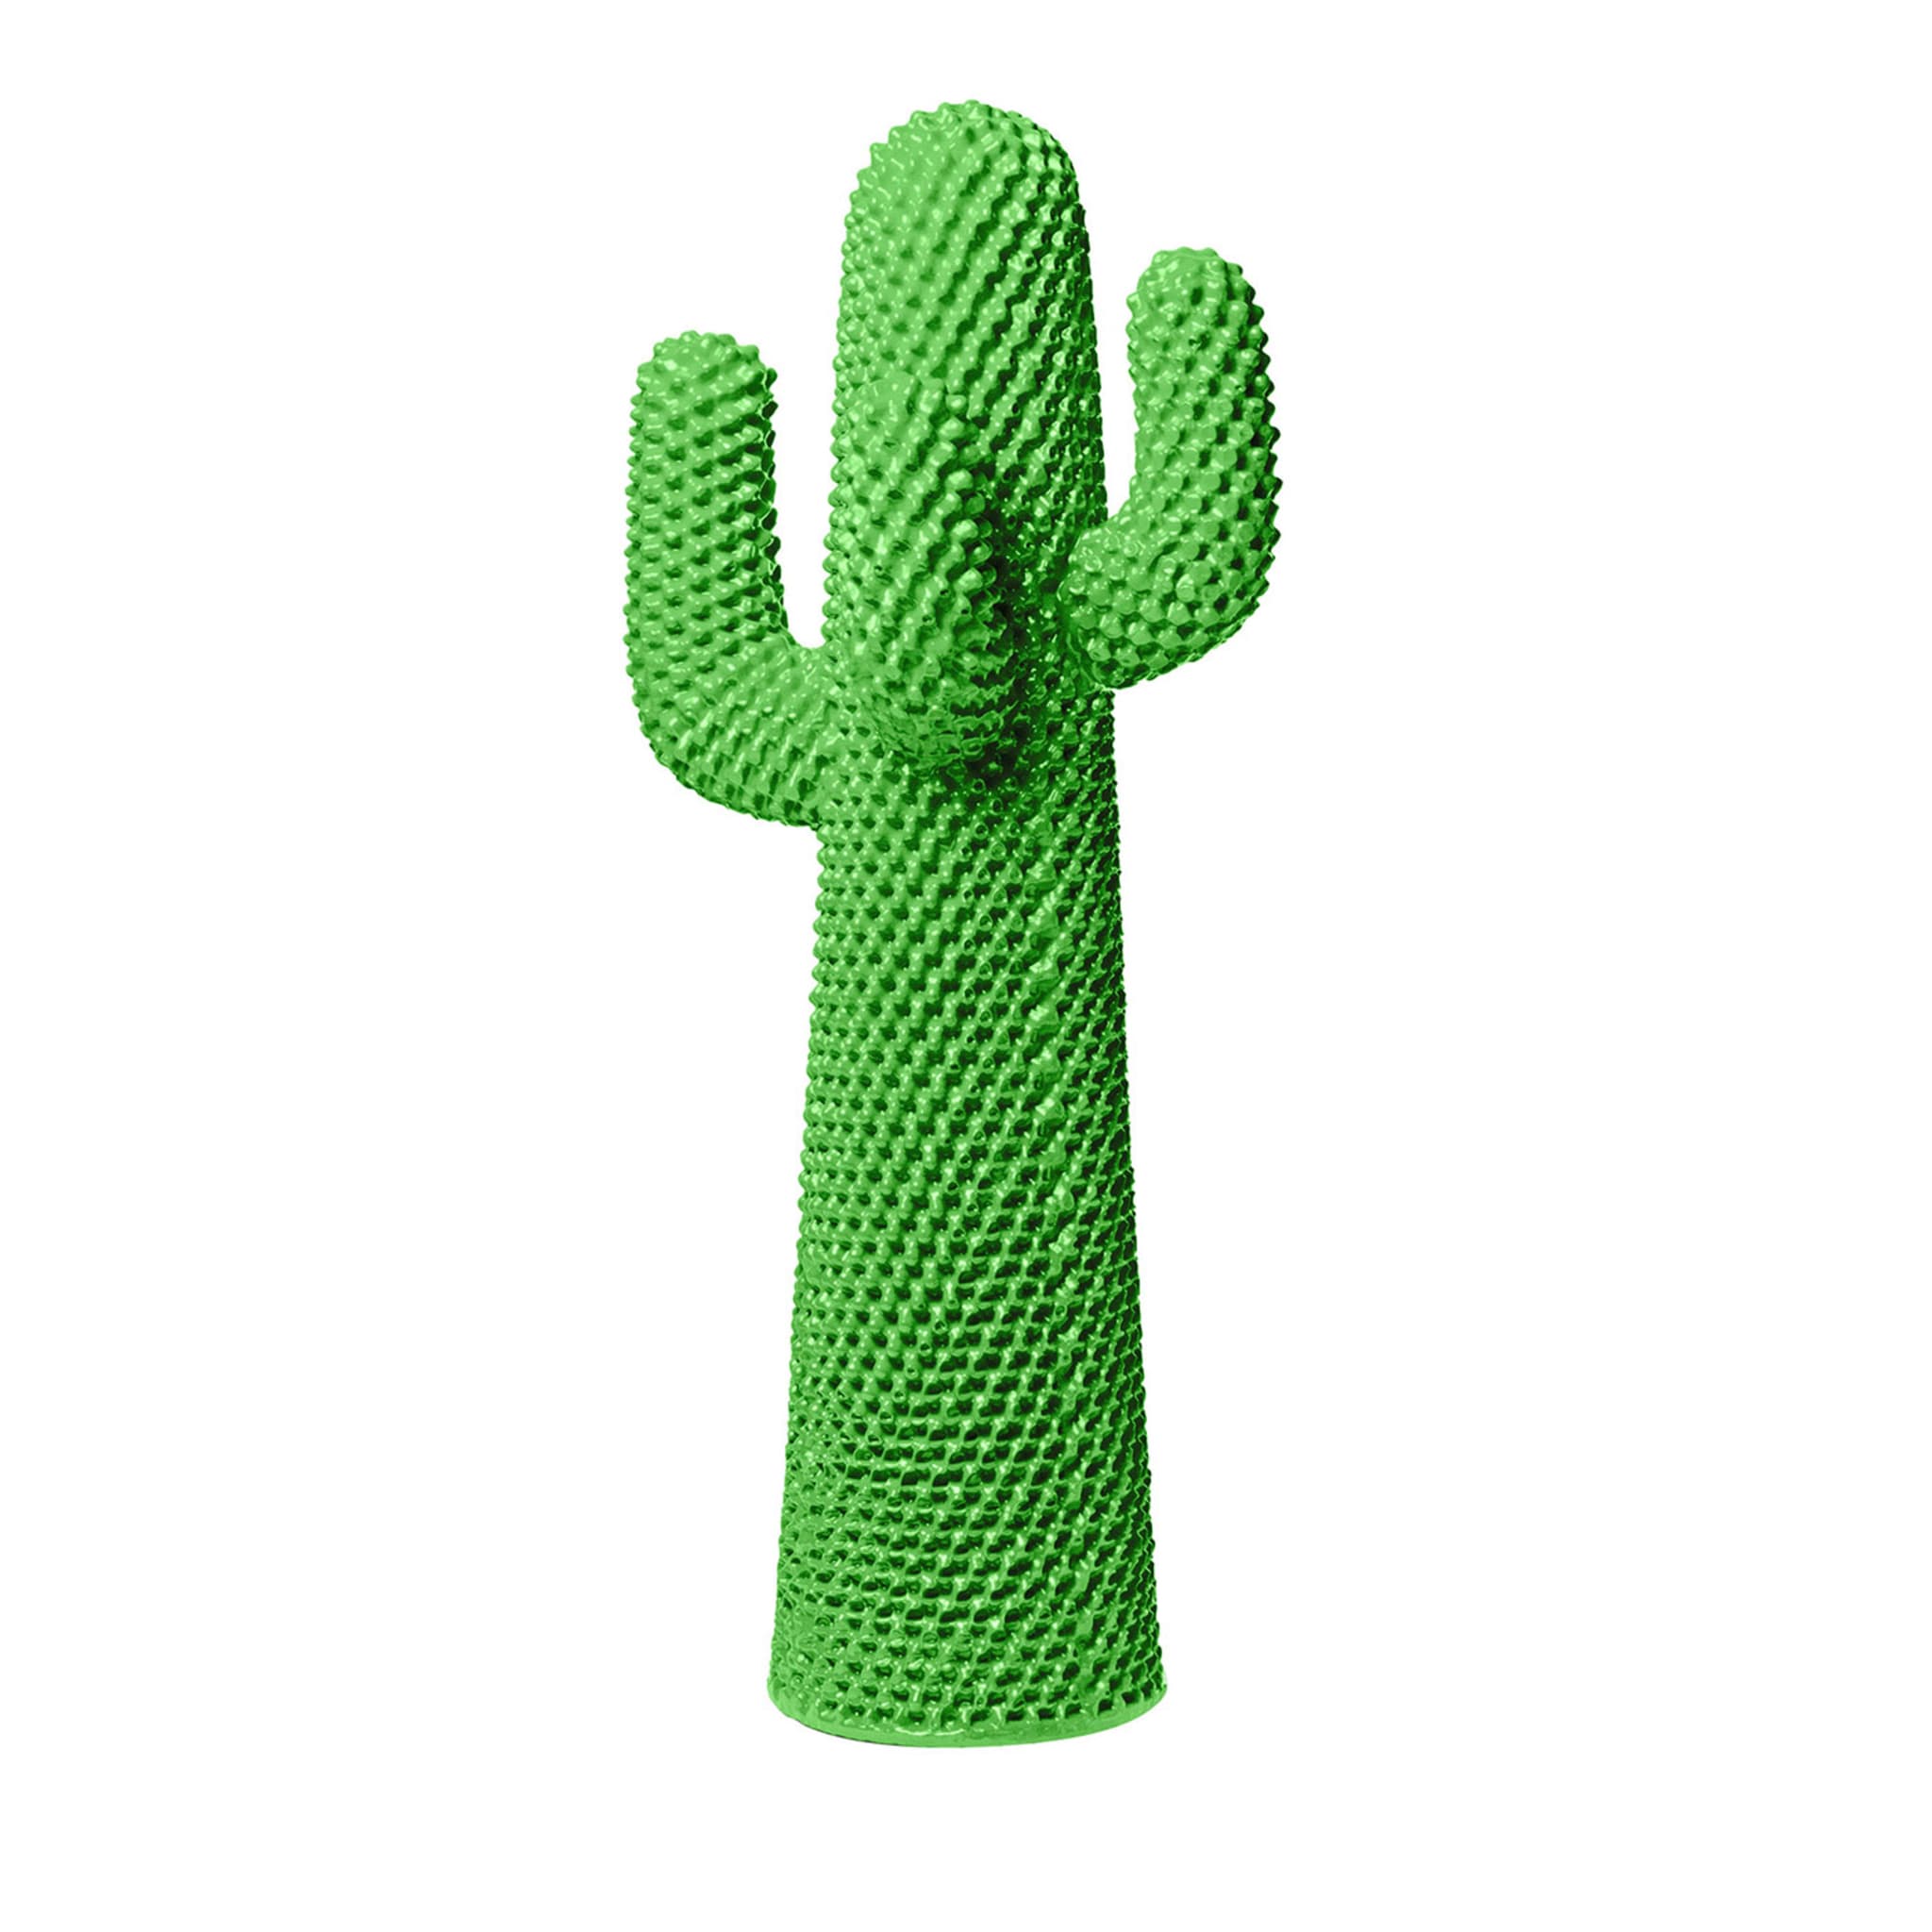 Ein weiterer grüner Kaktus-Garderobenständer von Drocco/Mello - Hauptansicht